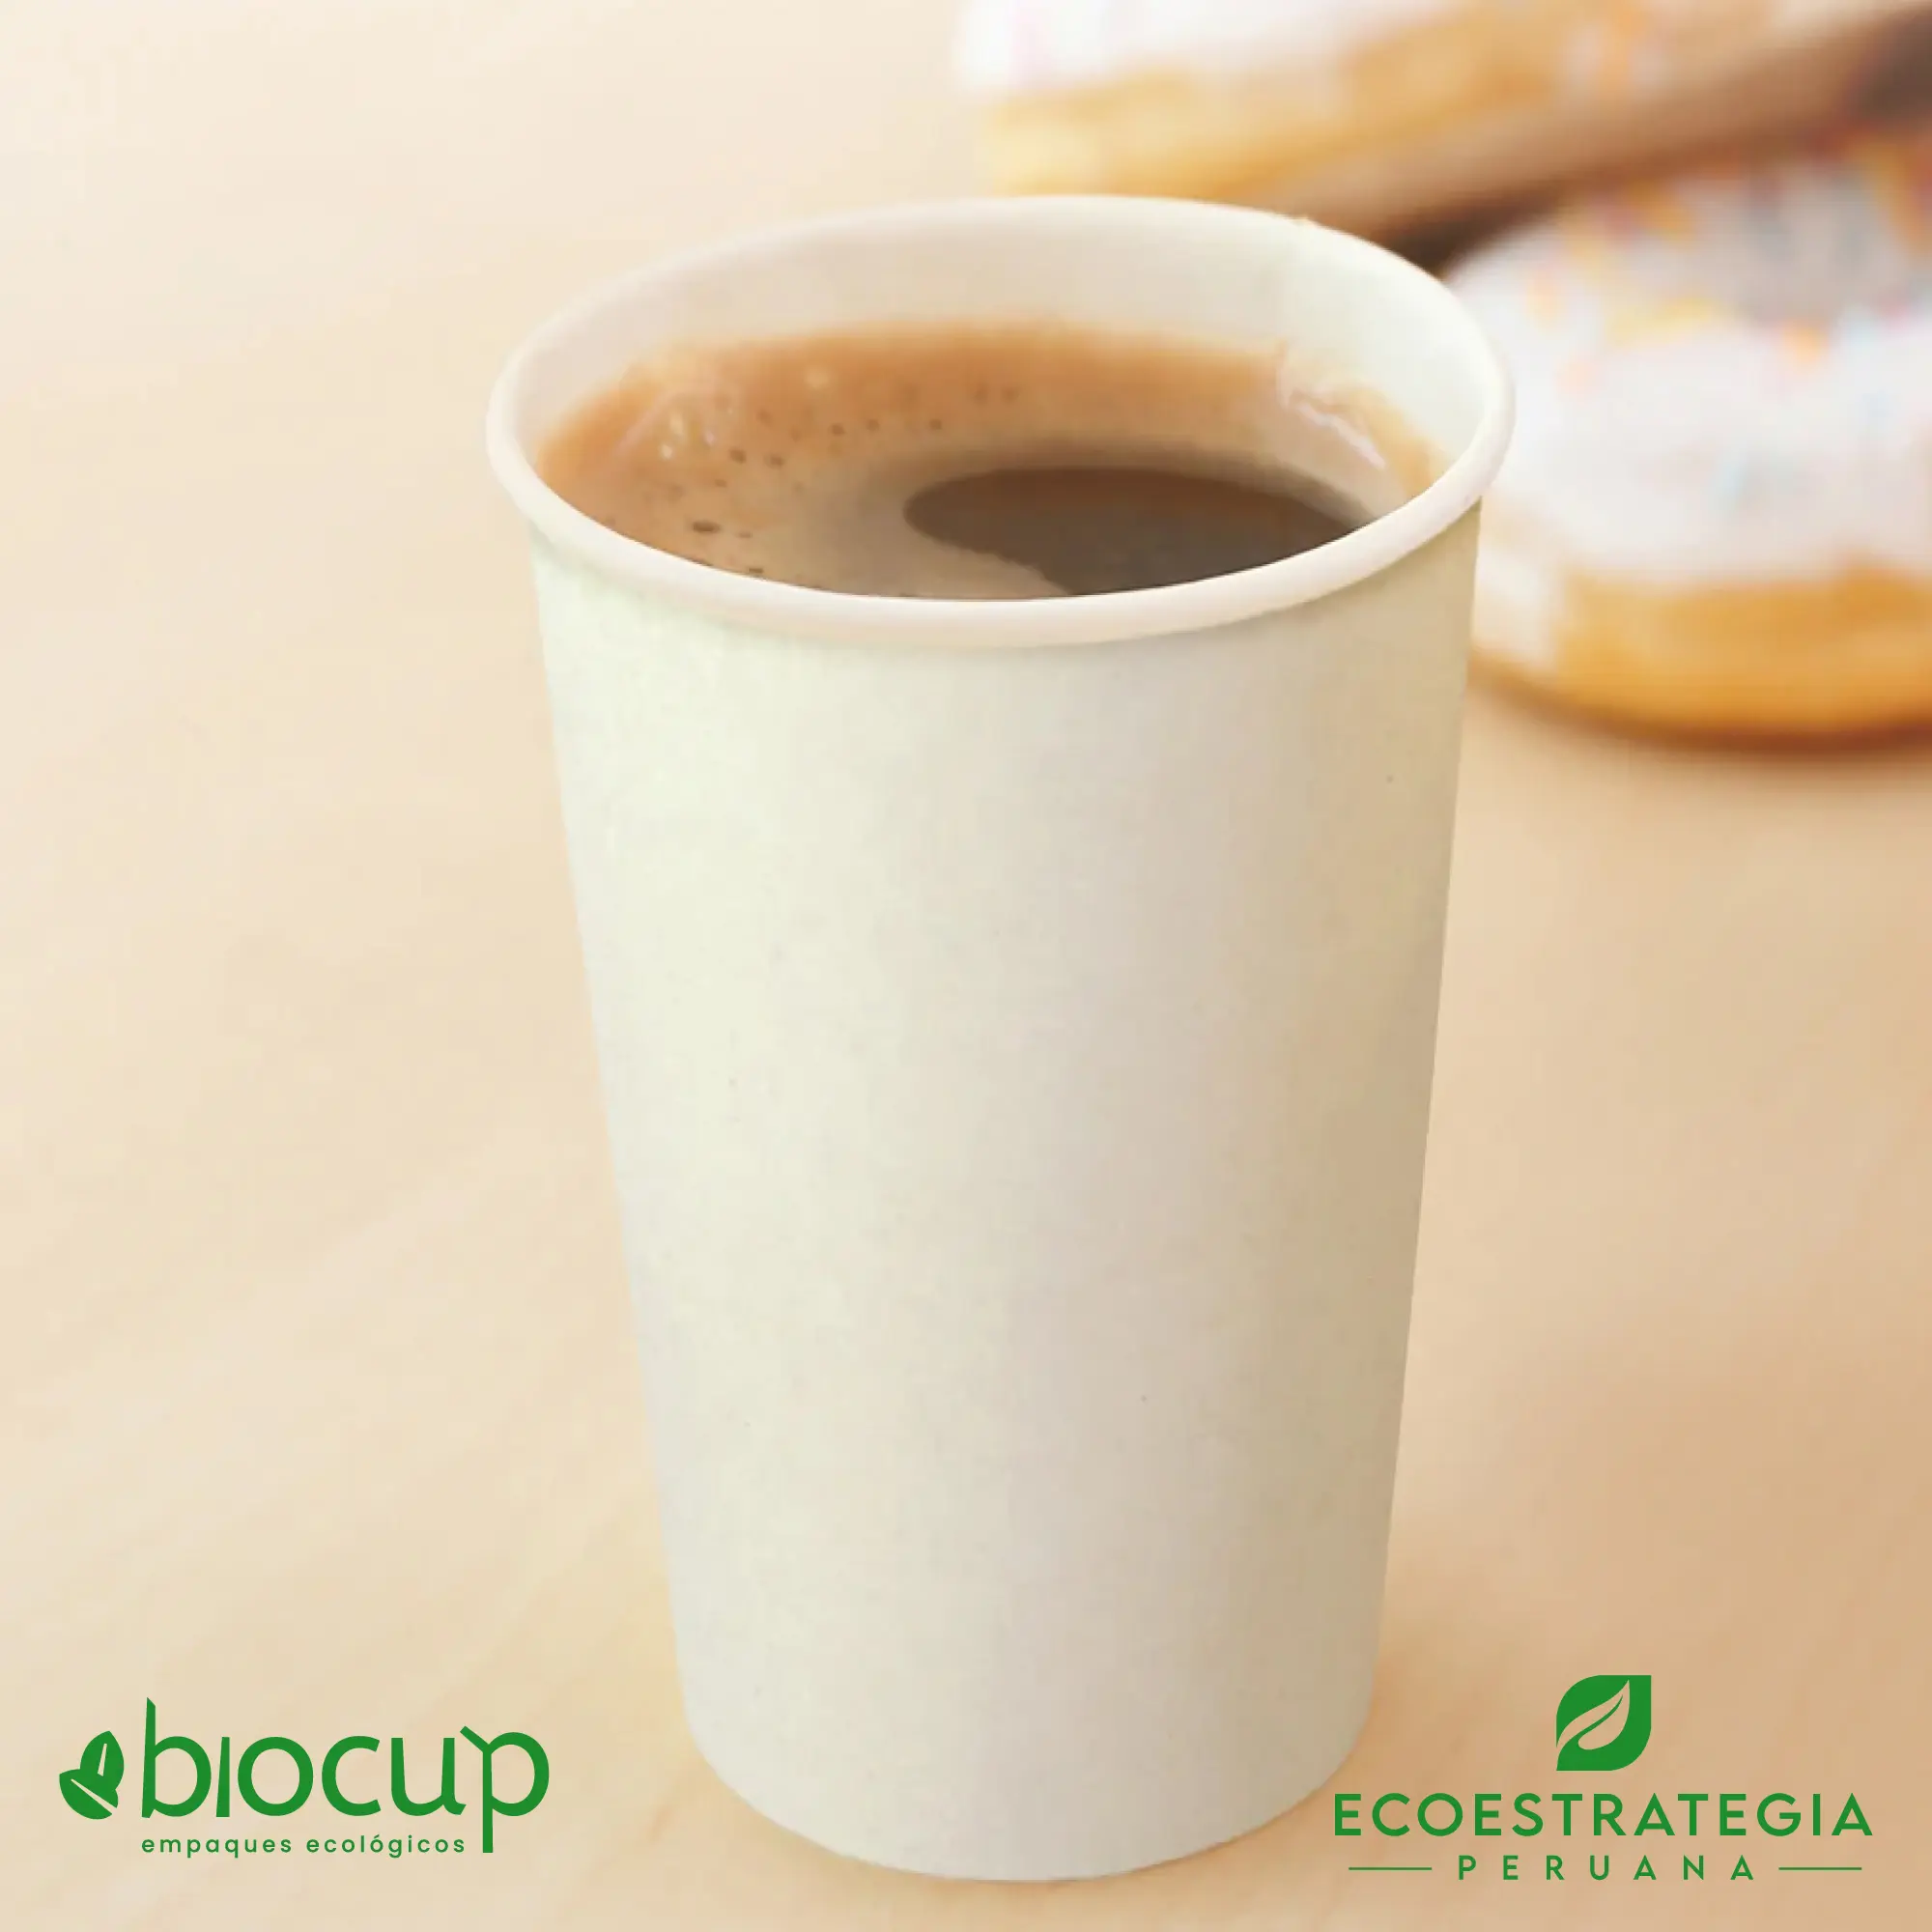 Vasos reciclable para bebidas calientes EP-B16 también conocido como vasos de bambú biodegradables 16 oz, vasos compostable 16 oz, vaso desechable bambú, vasos biodegradable de bambú por mayor, vaso compostable 16 oz , vaso bambú, vaso bioform 16 oz, vaso bioform 12 oz, vaso pamolsa biodegradable, vaso por mayor, vaso compostable marrón, vasos para café Perú, vasos personalizable biodegradable, vaso hermético para delivery, vasos biodegradables para delivery, mayoristas de vasos biodegradables, distribuidores de vasos biodegradables, importadores de vasos biodegradables, vasos biodegradables eco estrategia peruana.